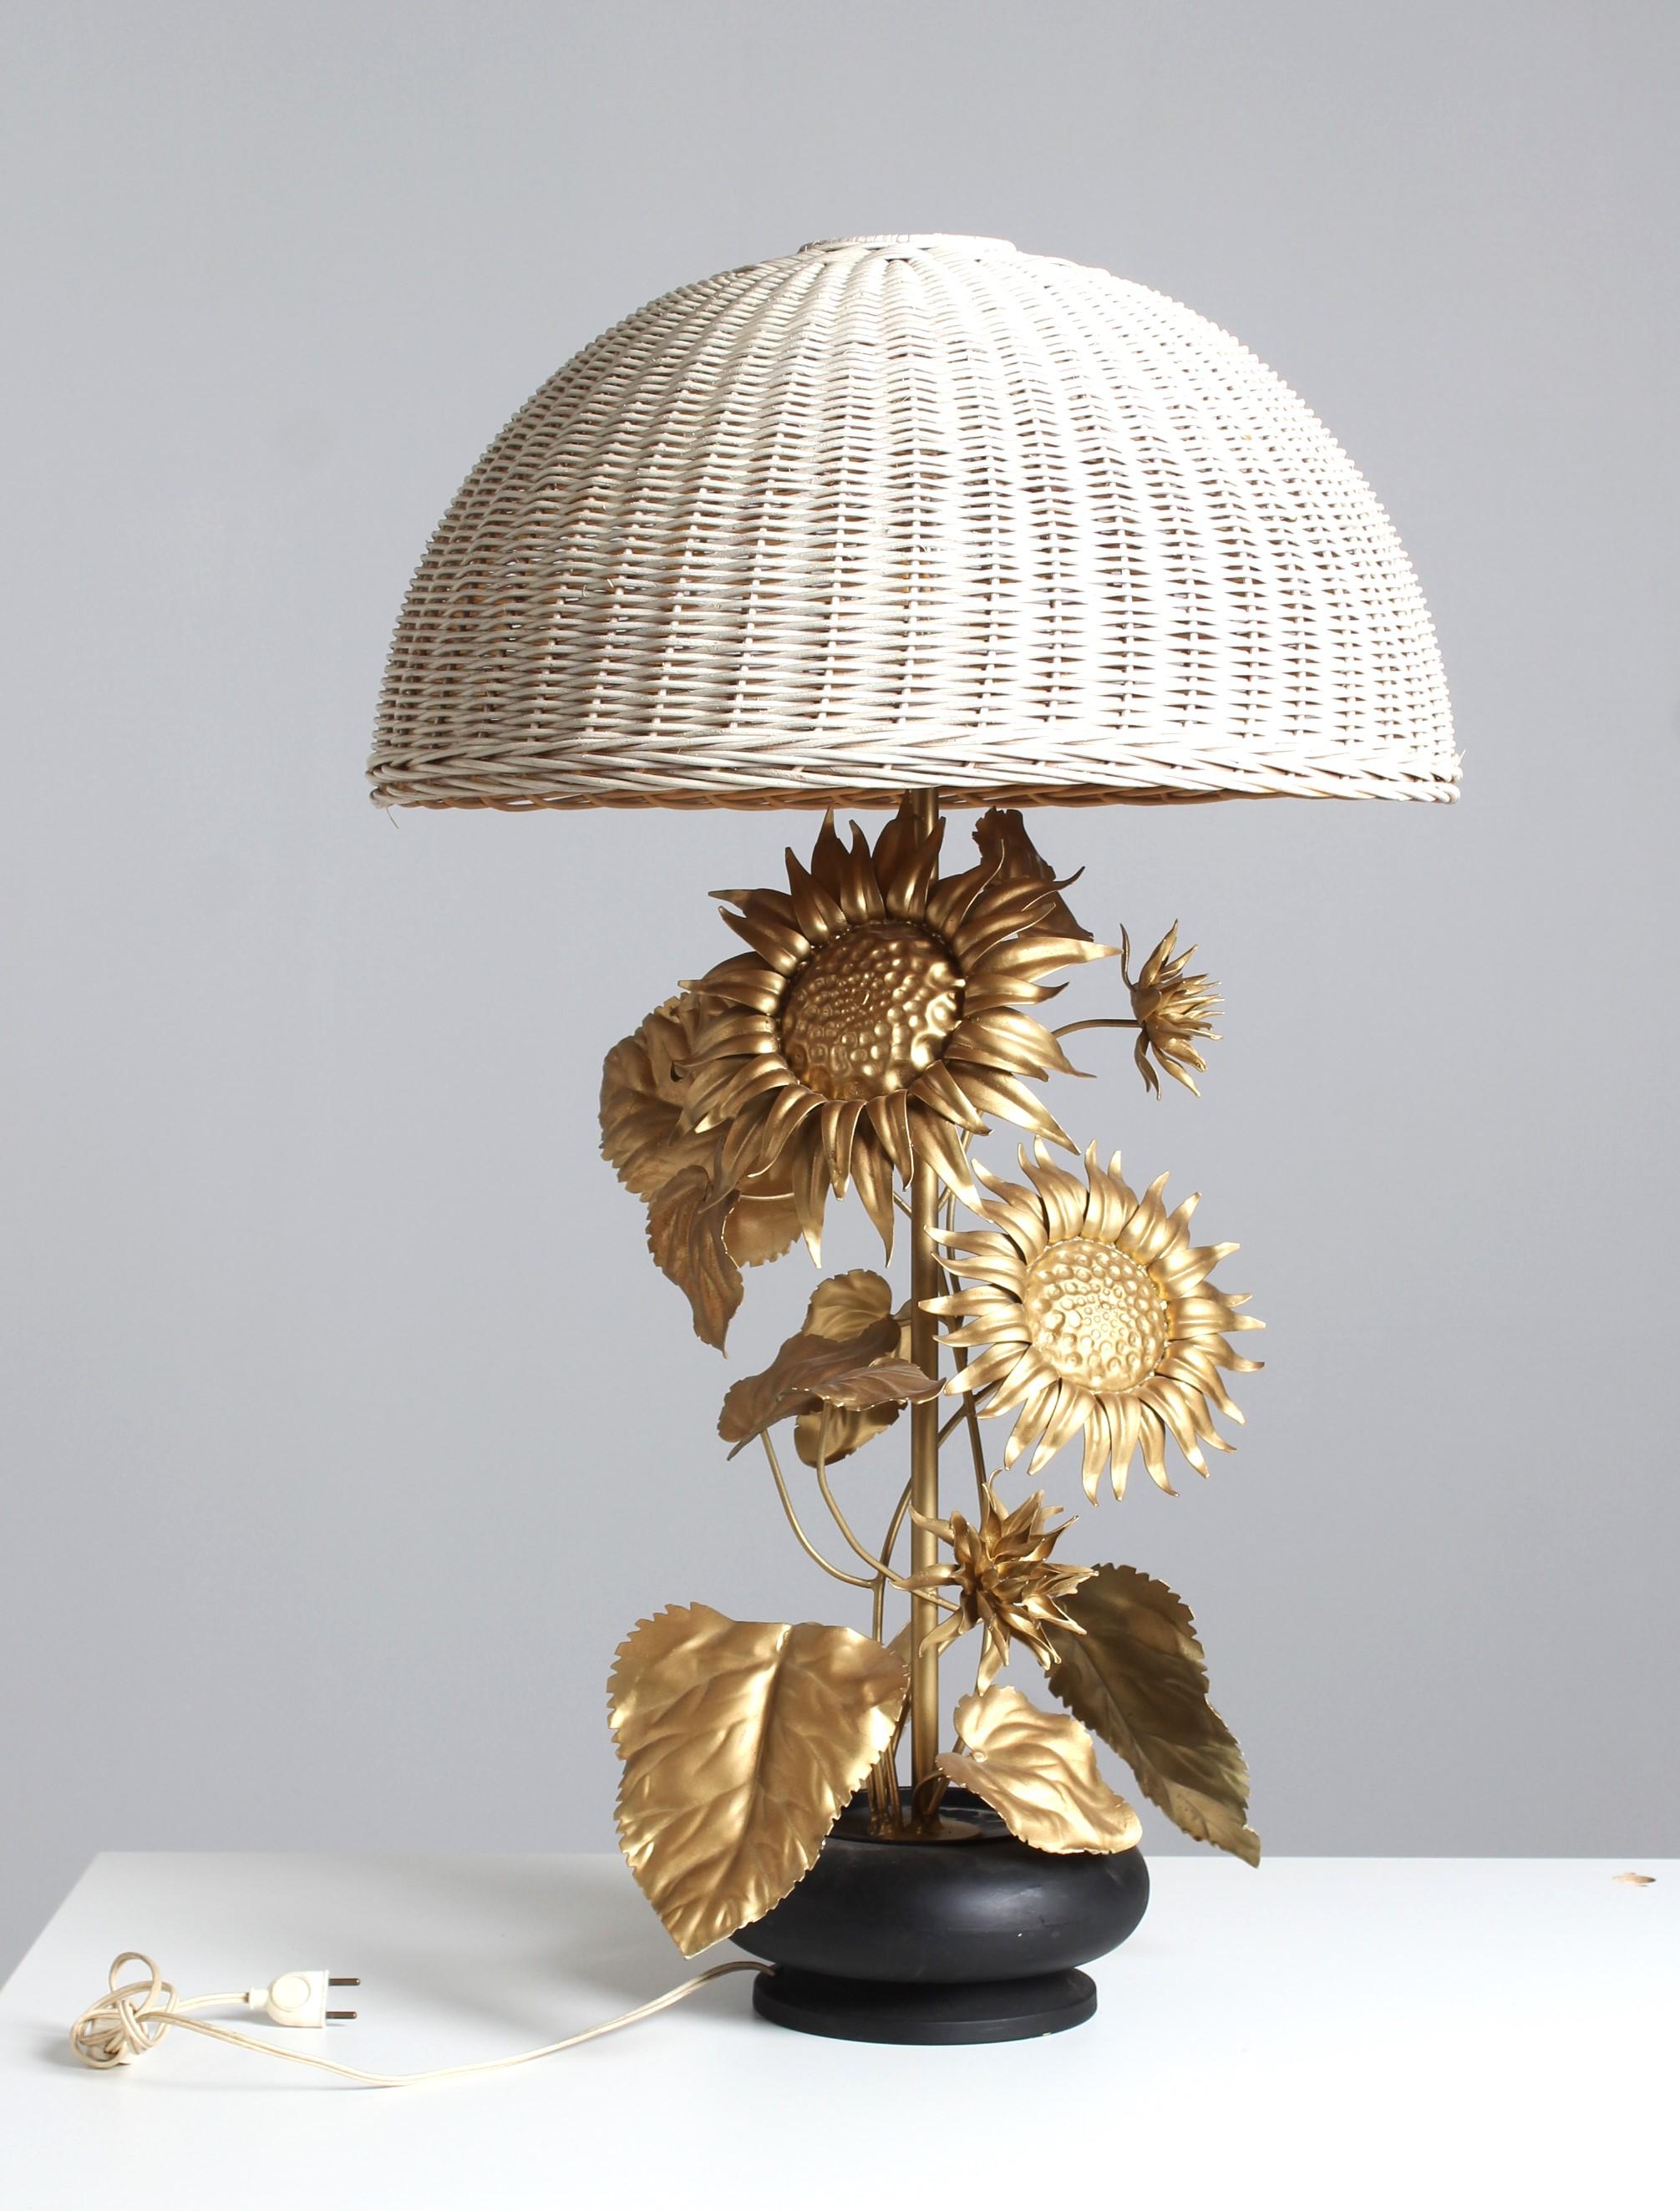 Große Sonnenblumen-Tischlampe aus goldlackiertem Metall mit detaillierten Blüten und Blättern.
Die Pflanze ragt aus einem Blumentopf heraus und wird von einem Rattanschirm gekrönt.

Höhe 95 cm
Durchmesser des Lampenschirms: 57 cm

Die